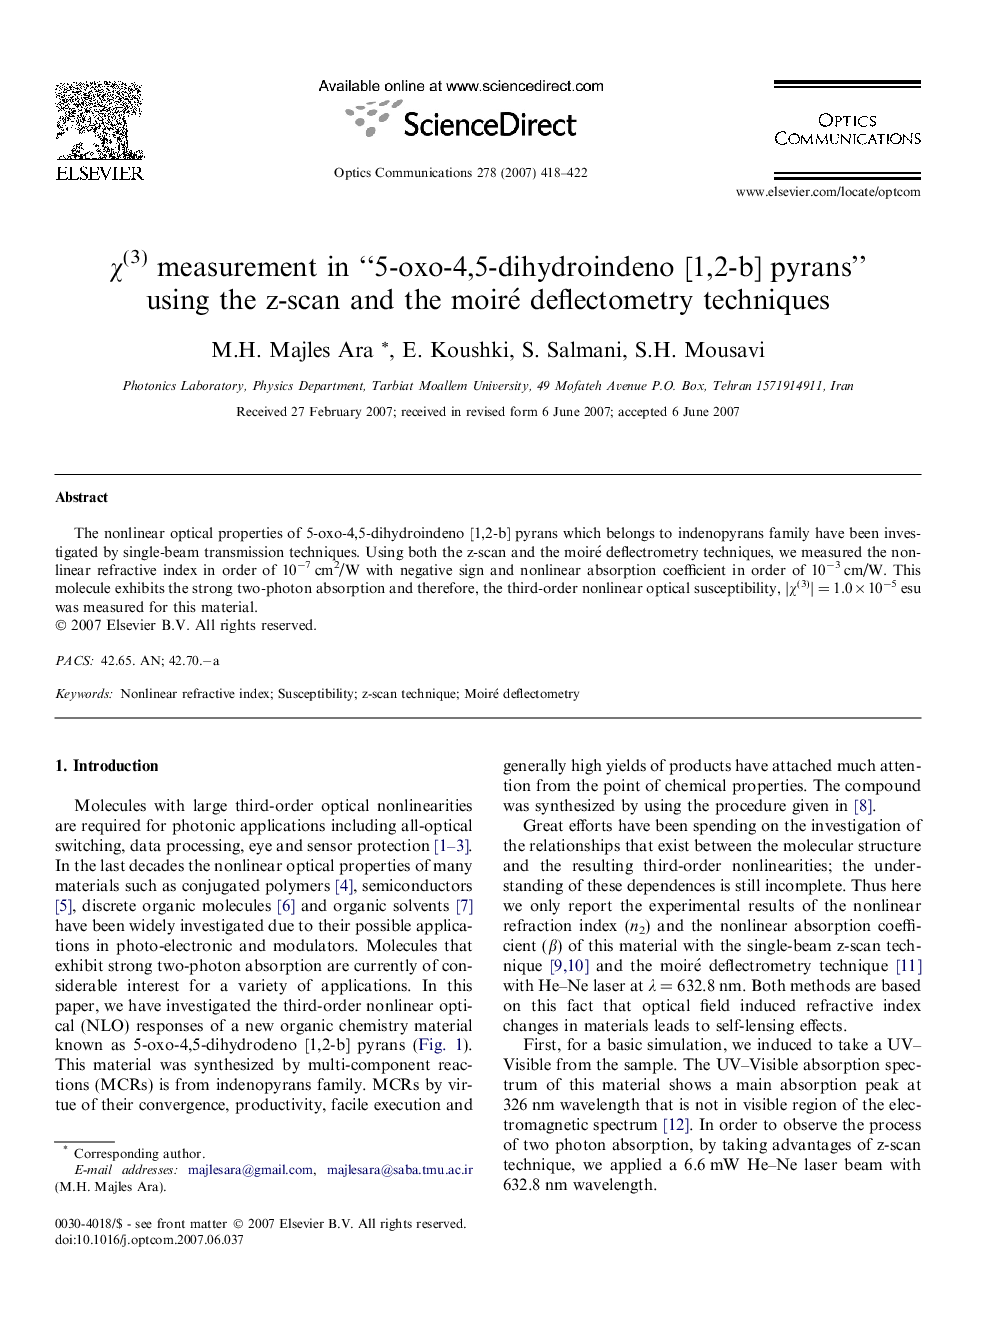 χ(3) measurement in “5-oxo-4,5-dihydroindeno [1,2-b] pyrans” using the z-scan and the moiré deflectometry techniques